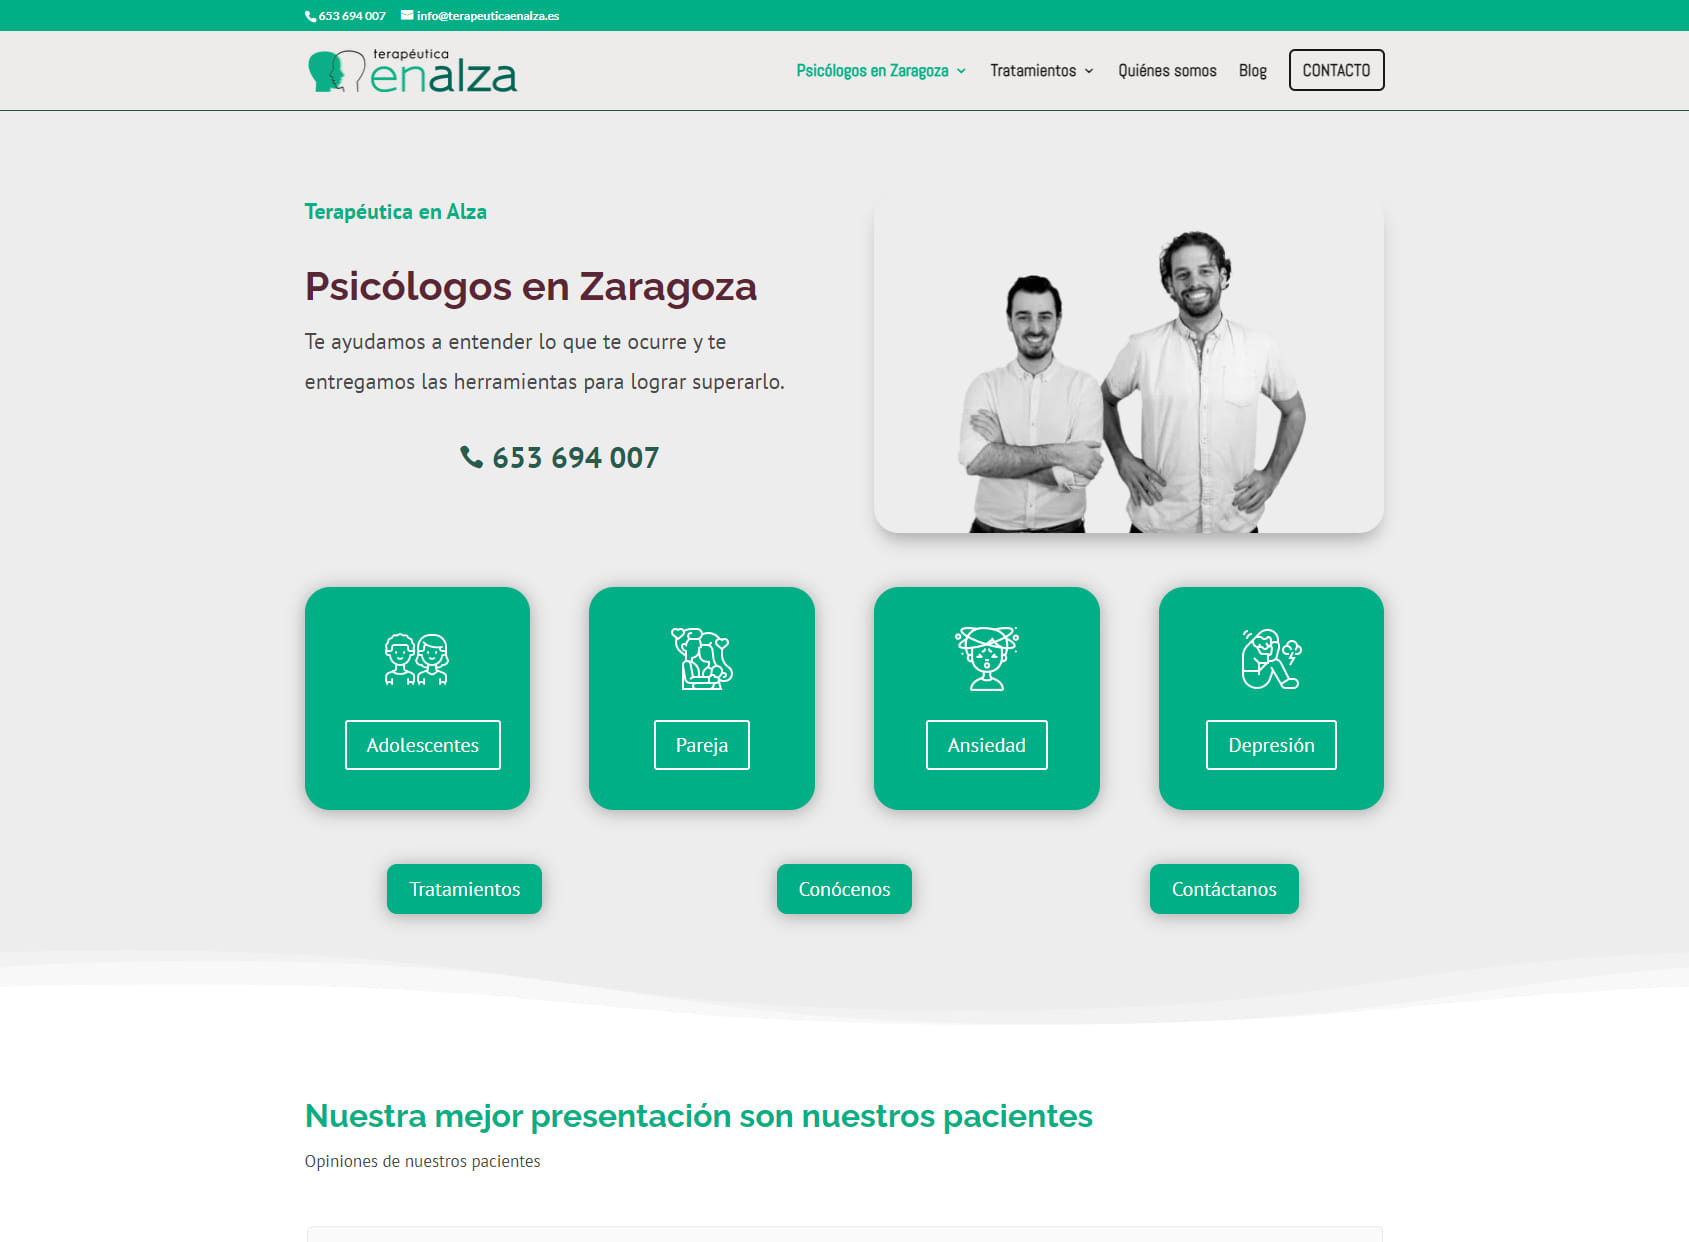 Terapéutica en Alza. Consulta de psicólogos en Zaragoza